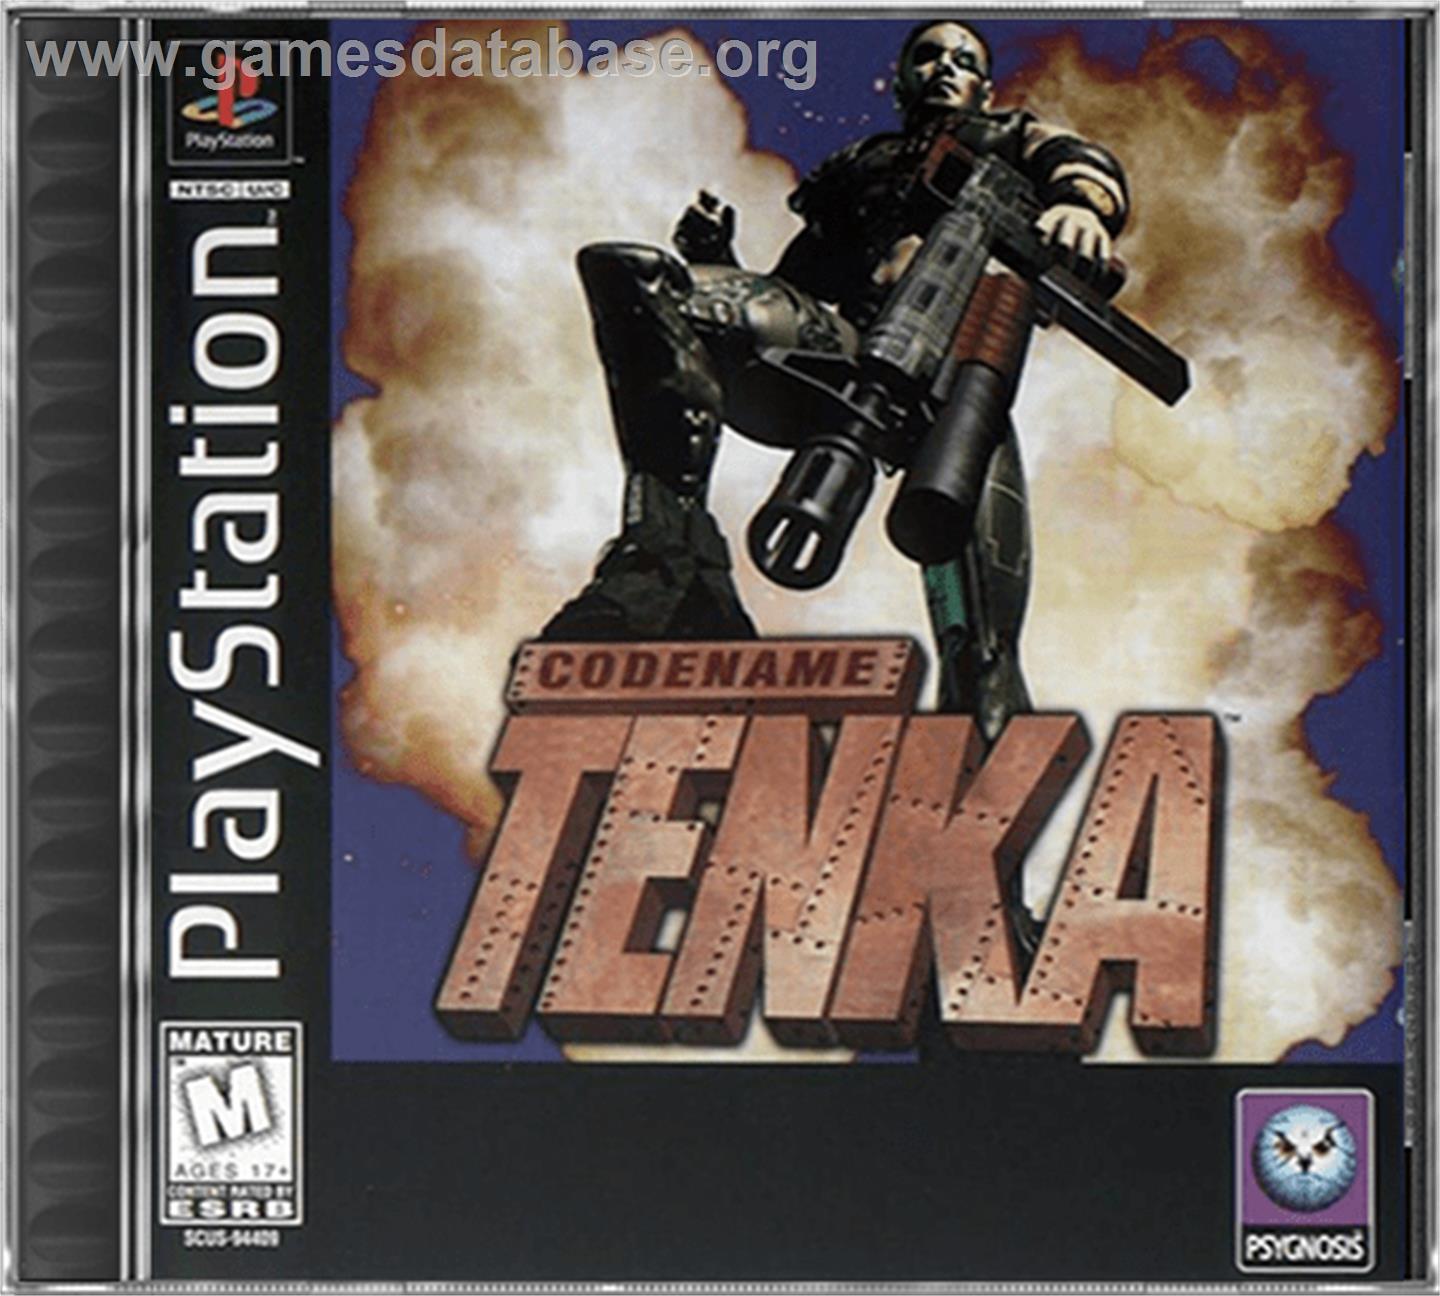 Codename: Tenka - Sony Playstation - Artwork - Box